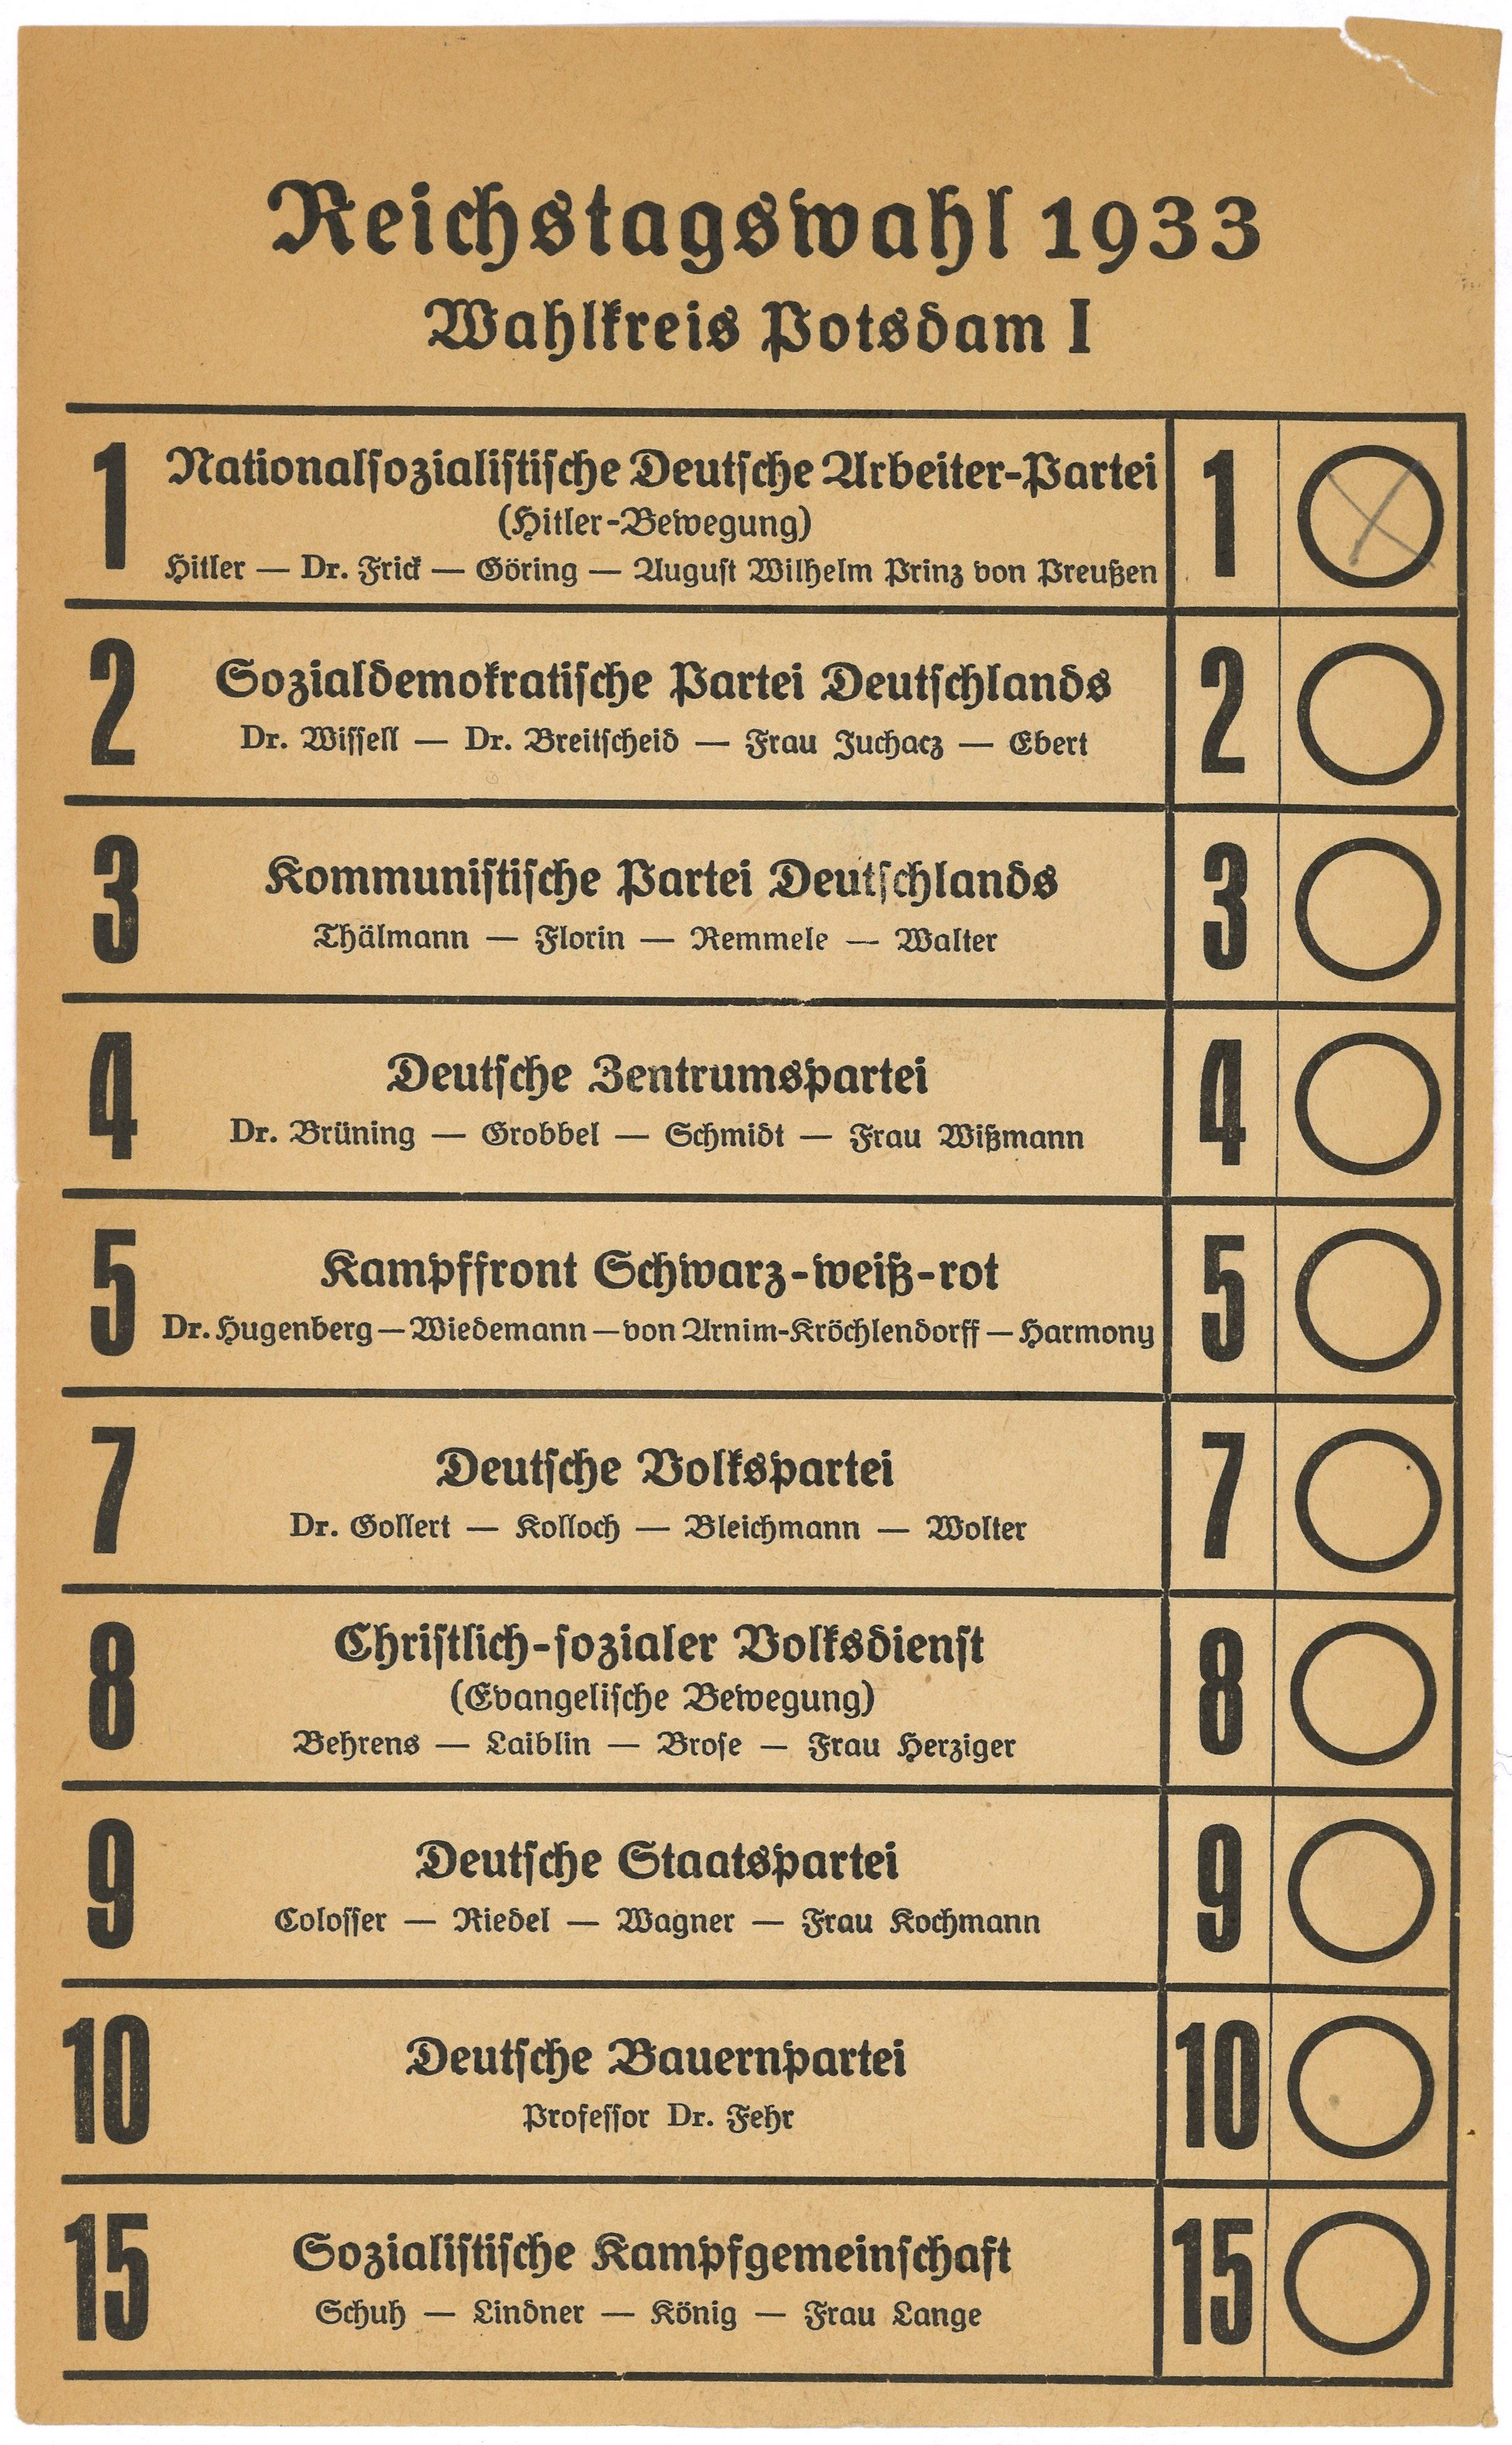 Stimmzettel zur Reichstagswahl März 1933 im Wahlkreis Potsdam I (Landesgeschichtliche Vereinigung für die Mark Brandenburg e.V., Archiv CC BY)